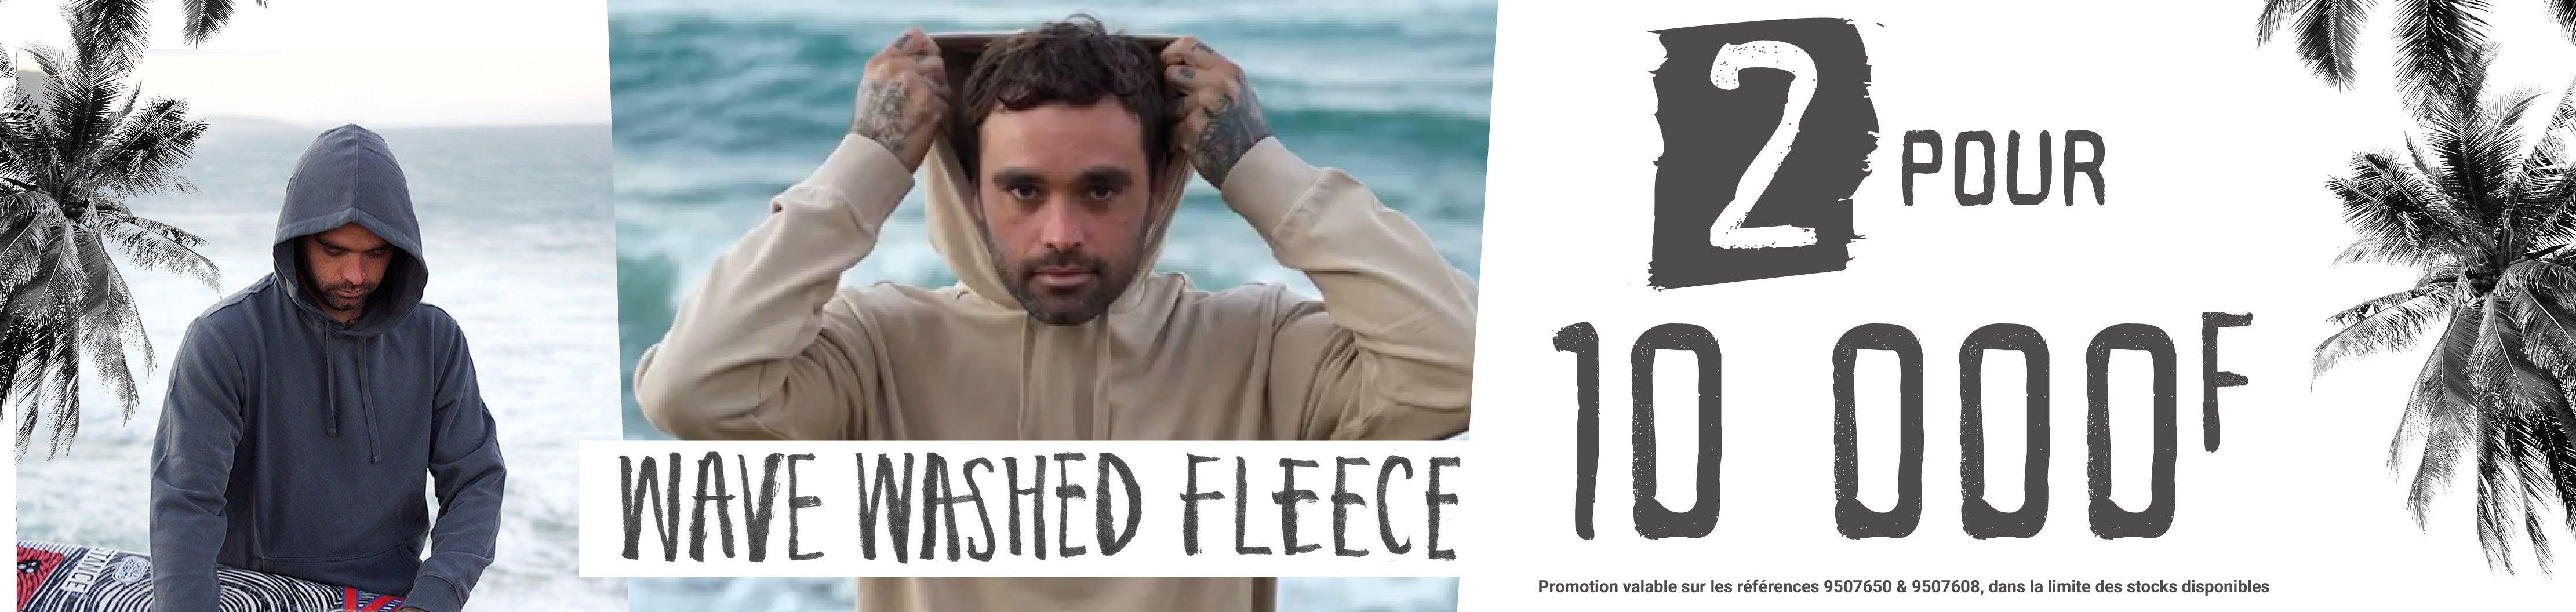 Offre Billabong Fleece : 2 pour 10.000 FCFP